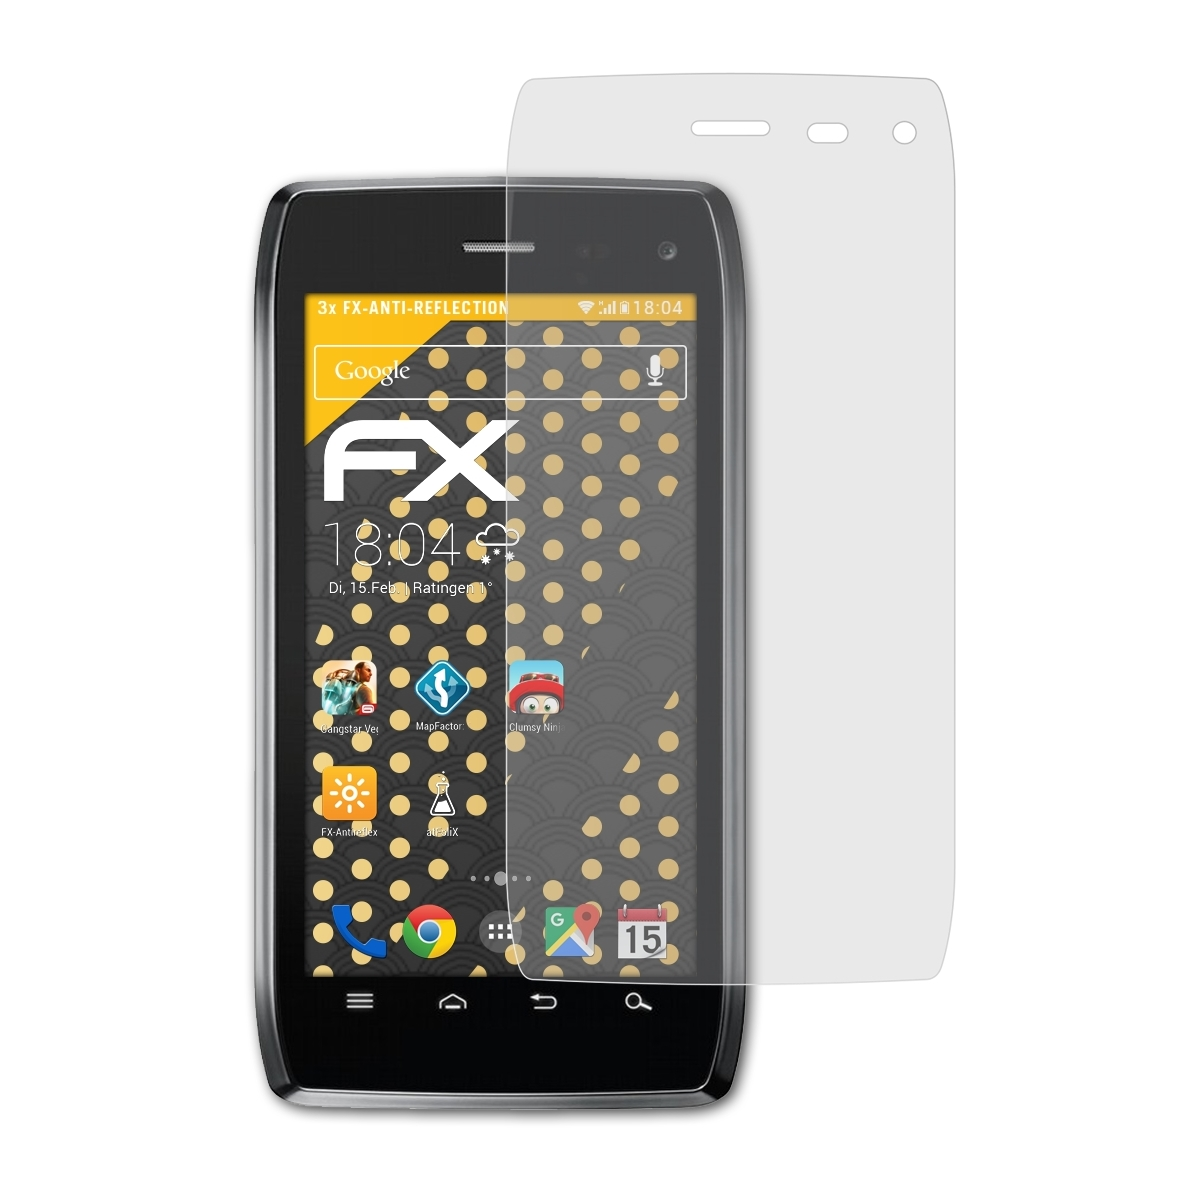 4) Motorola 3x Droid FX-Antireflex ATFOLIX Displayschutz(für